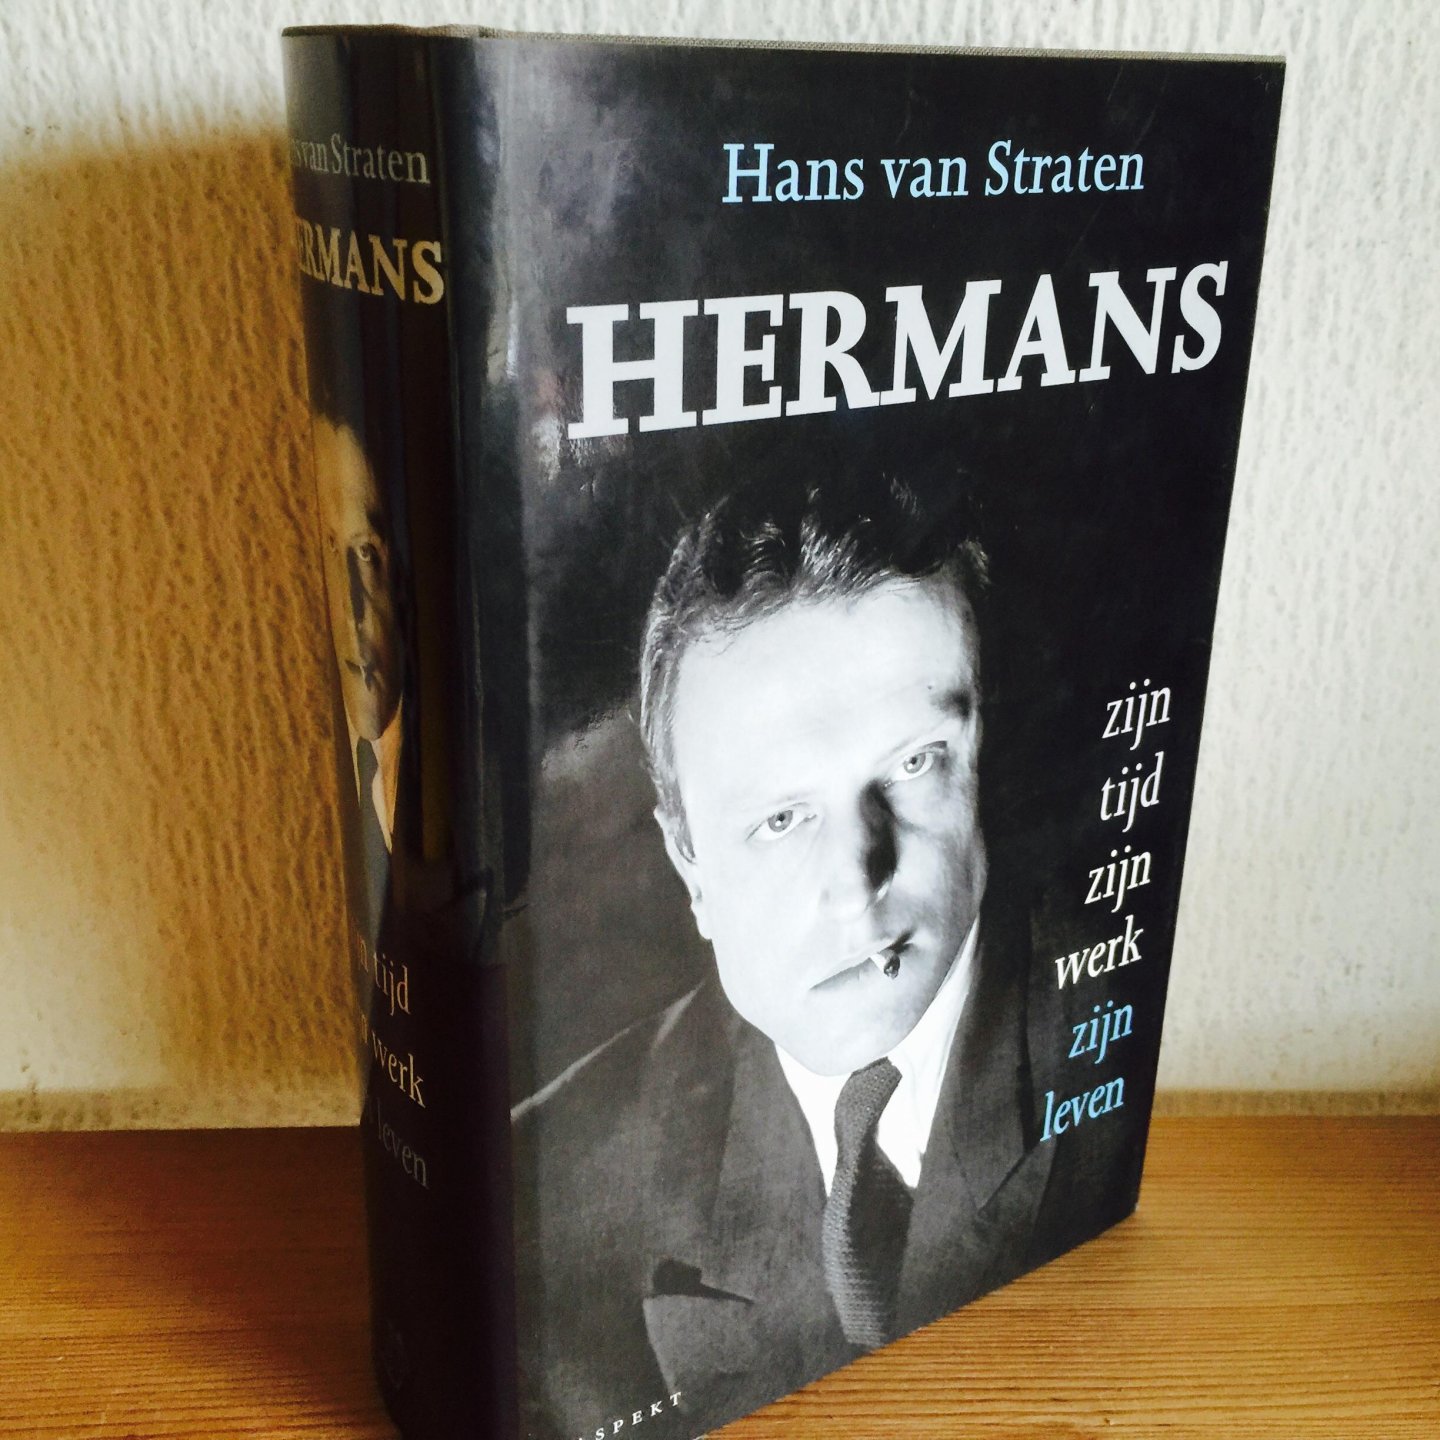 Hans van Stralen - HERMANS , zijn tijd zijn werk zijn leven